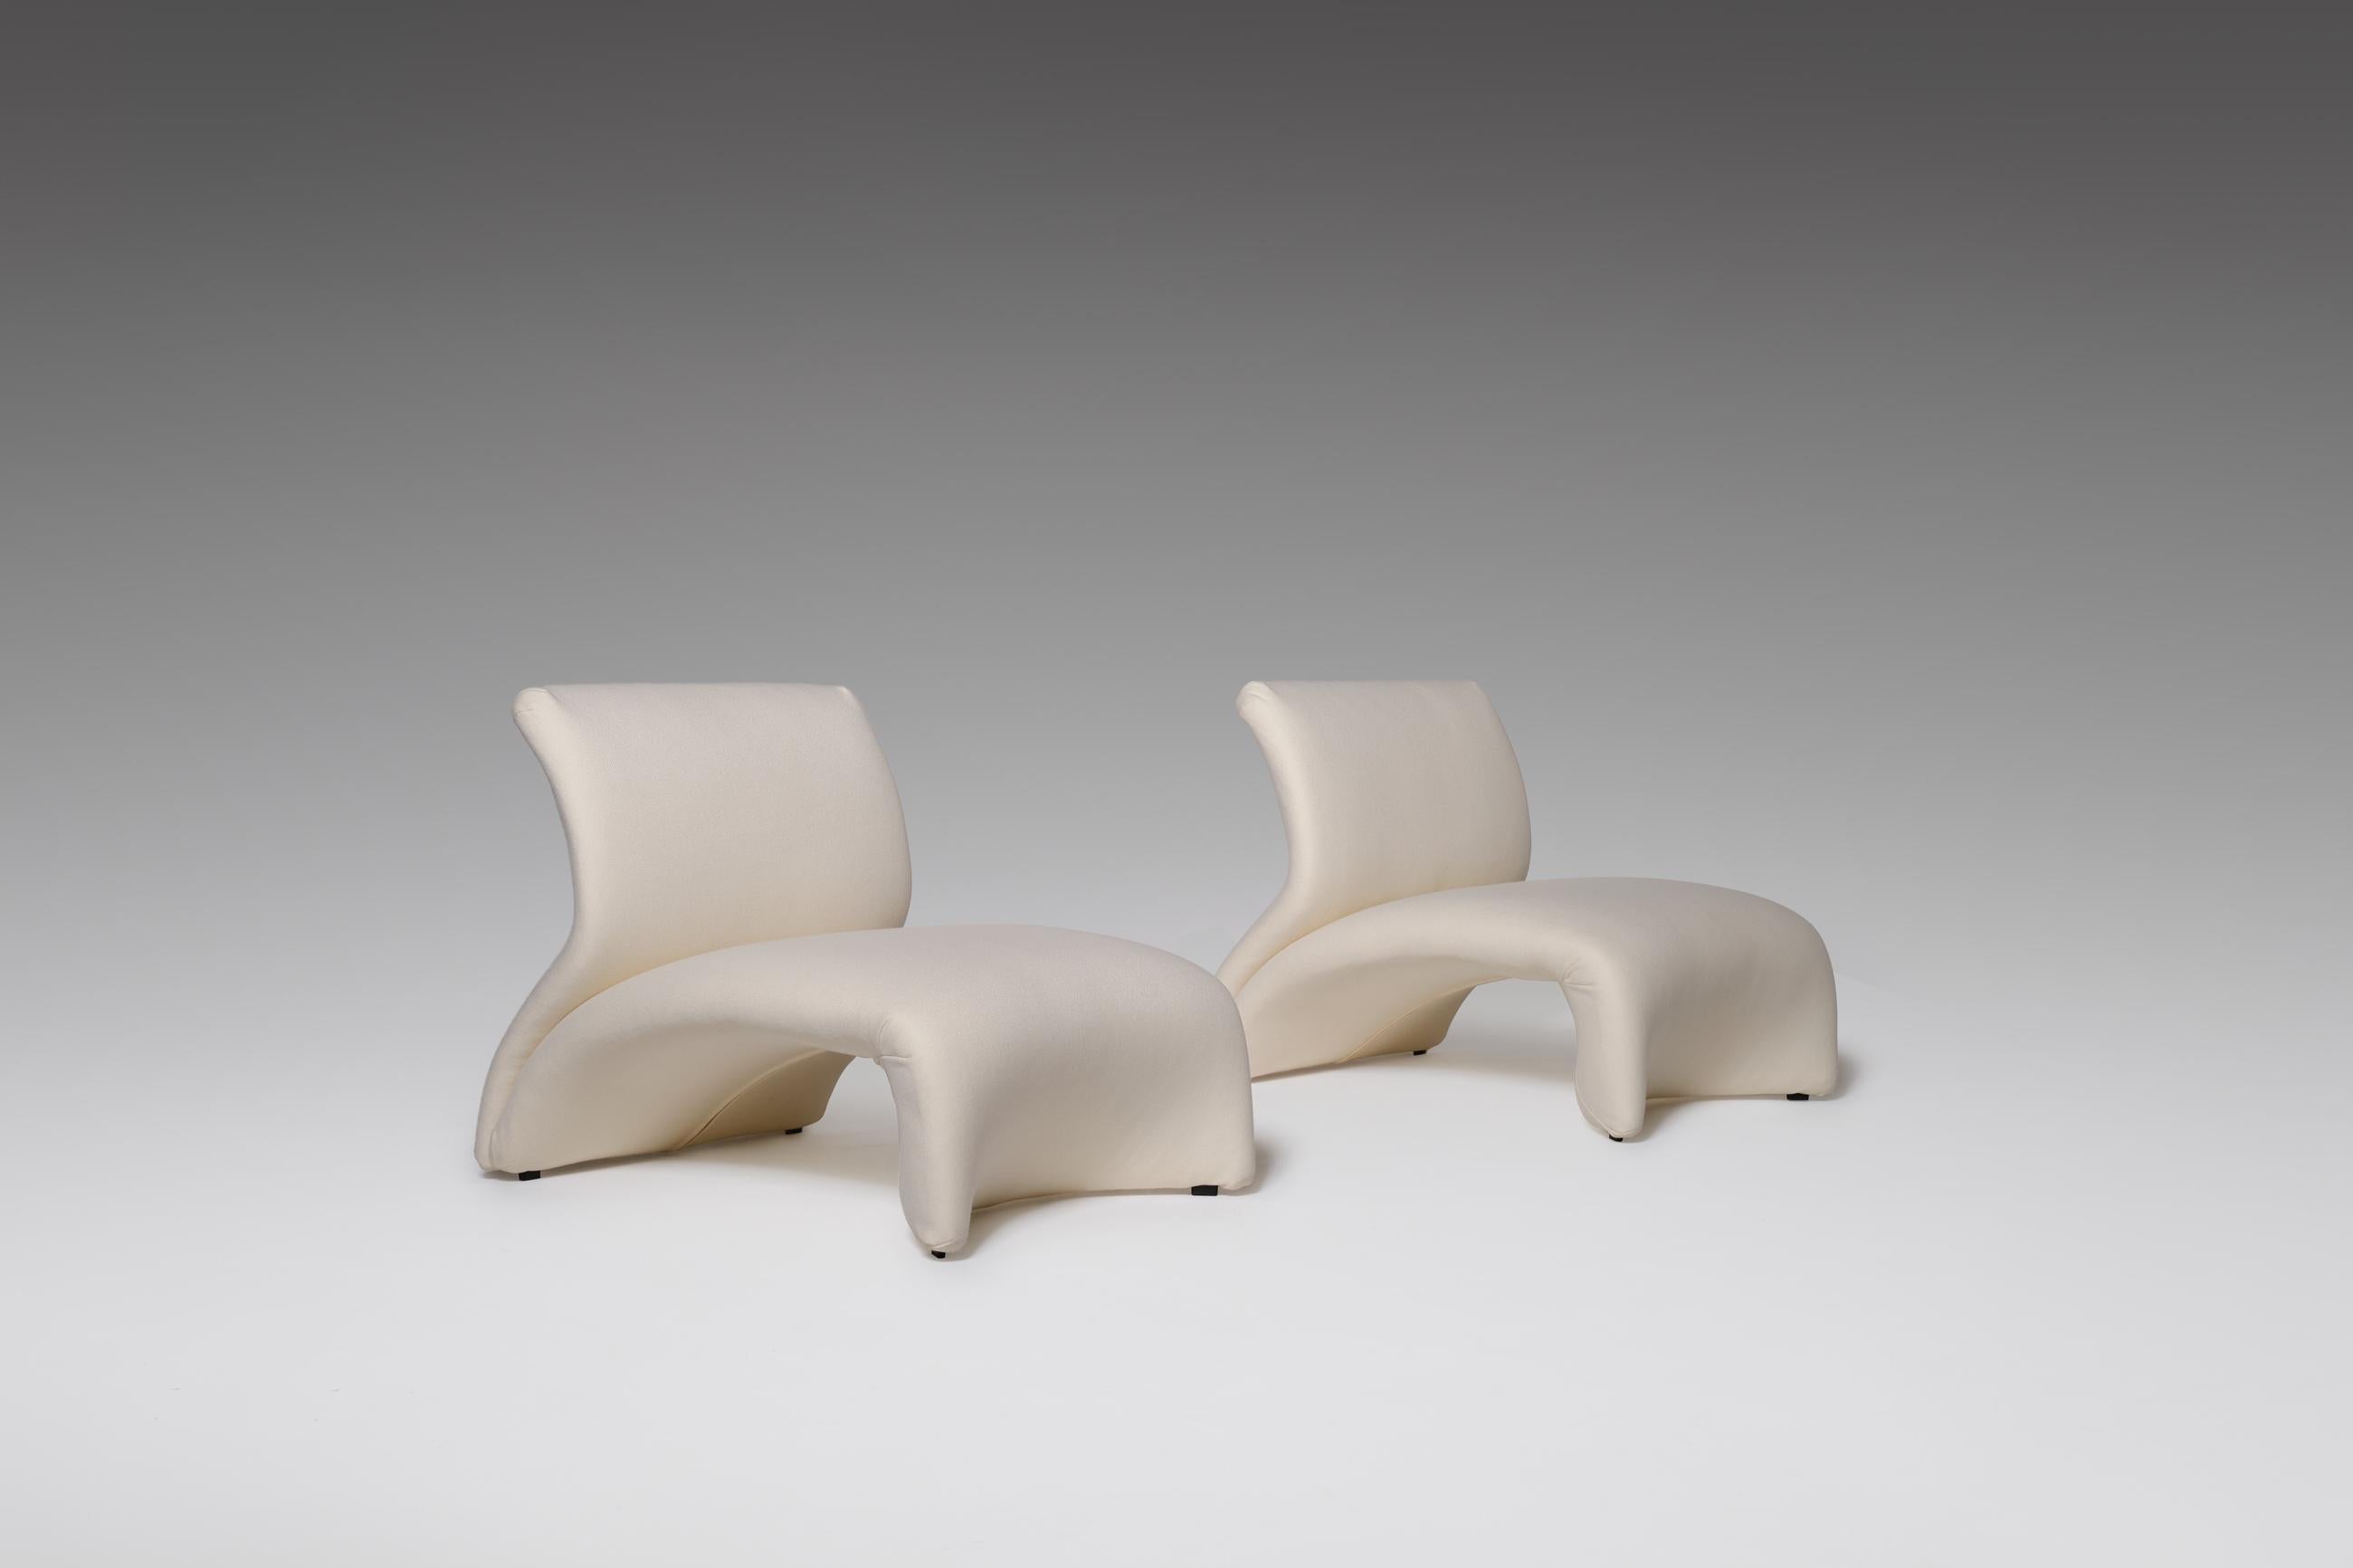 Seltenes Paar 'Kaïdo'-Sessel von Kwok Hoï Chan für Steiner, 1968. Fantastisches sinnliches und weiches Design. Kwok Hoï Chan Kwok Hoï Chan wurde in Hongkong geboren, wanderte nach England und später nach Frankreich aus, blieb aber immer seiner